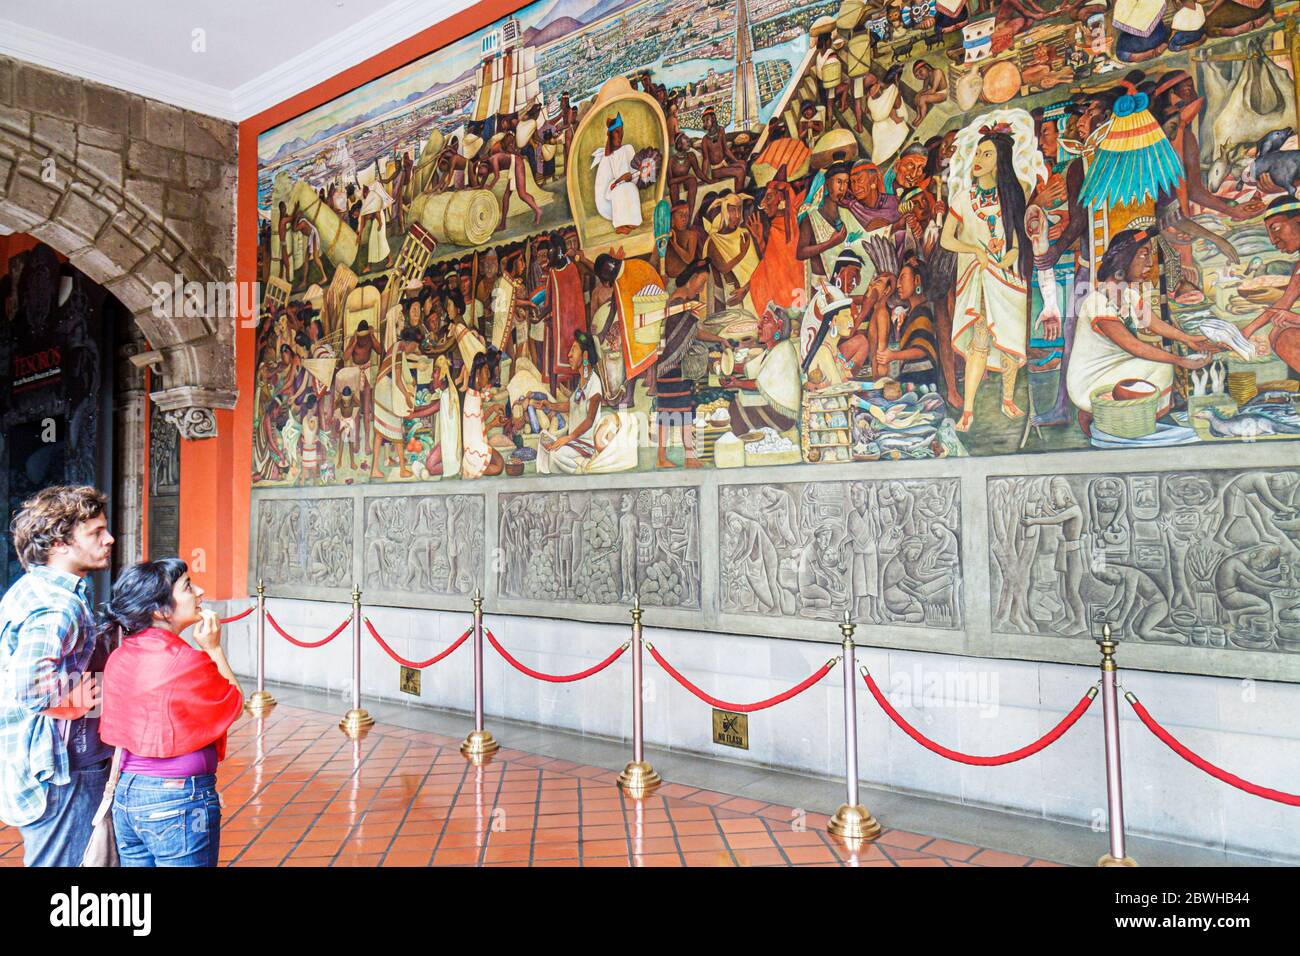 Mexico City,DF México,Federal District,Distrito Federal,Centro historico,Zocalo,Plaza de la Constitucion,Palacio Nacional,National Palace,mural,Mexica Stock Photo